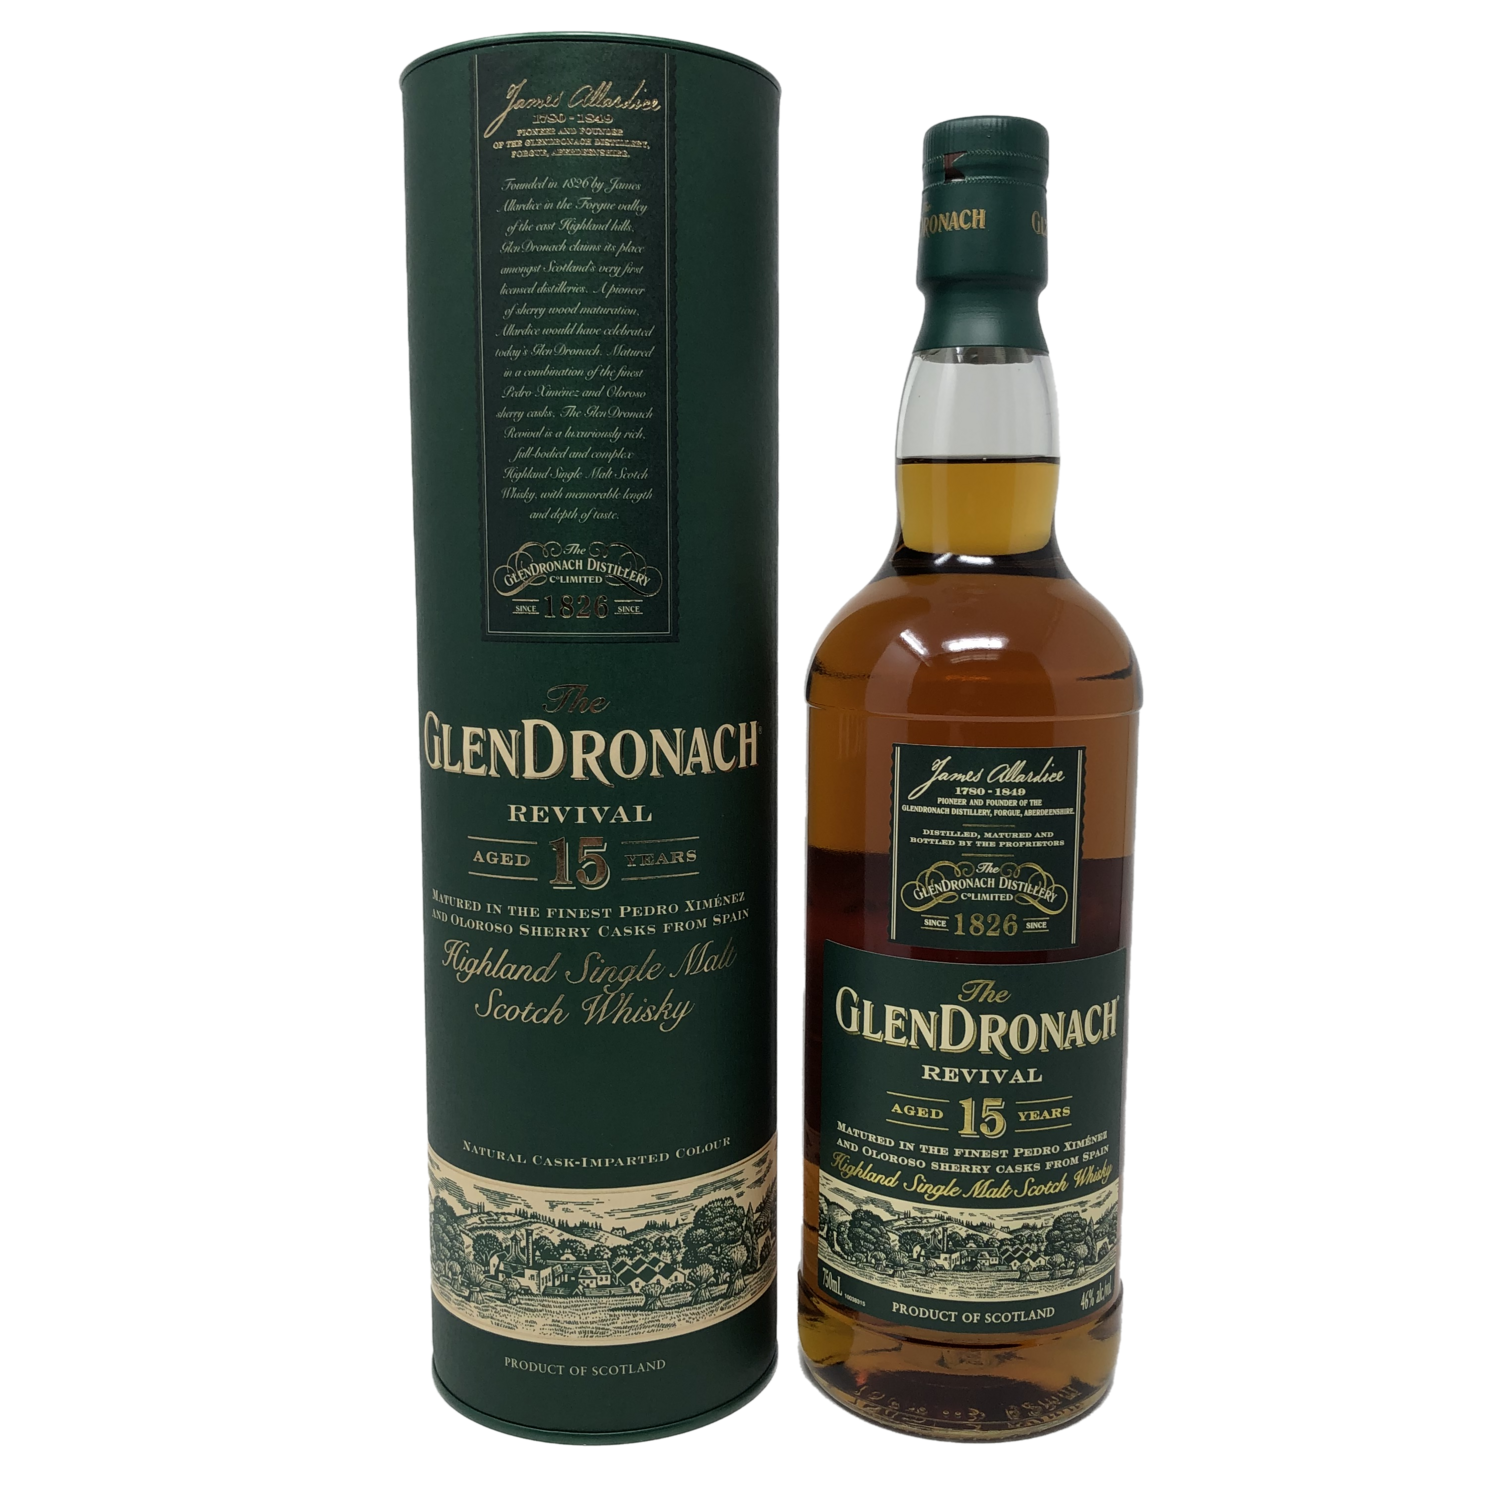 GlenDronach 15 Year Revival Single Malt Scotch Whisky